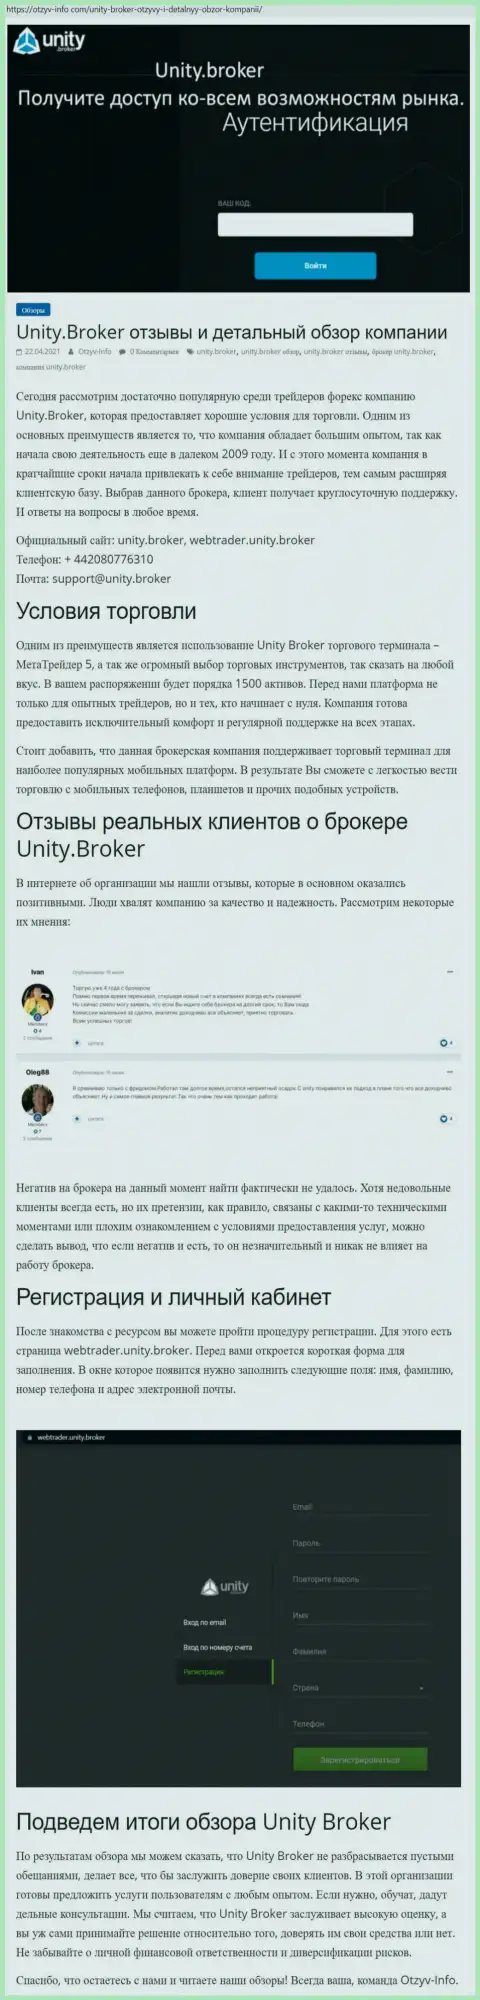 Обзор работы ФОРЕКС-компании Unity Broker на сайте Otzyv-Info Com